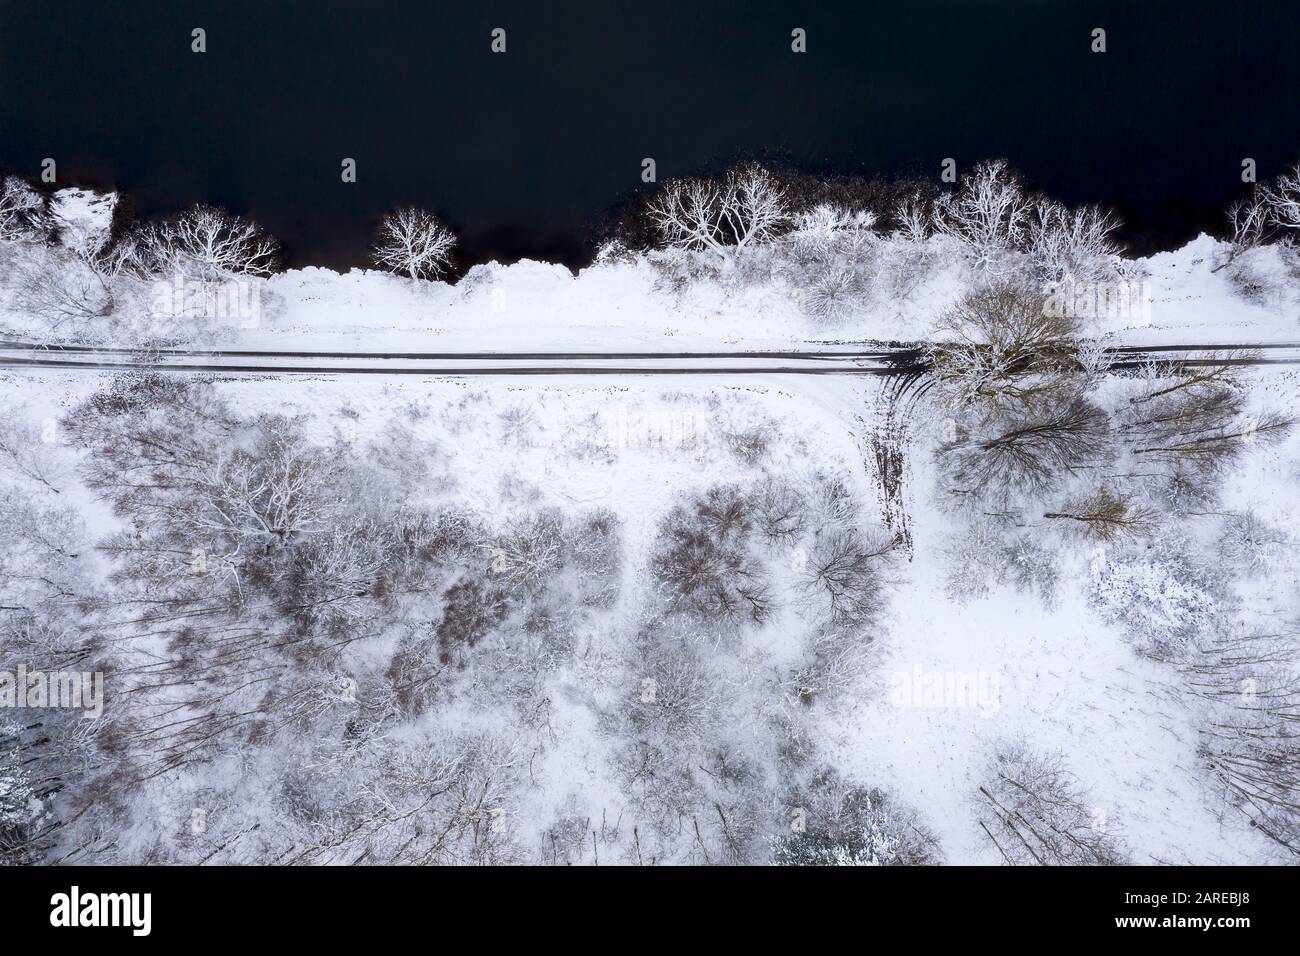 lago y bosque en invierno frío. hermoso paisaje de invierno. vista aérea de la costa del lago Foto de stock